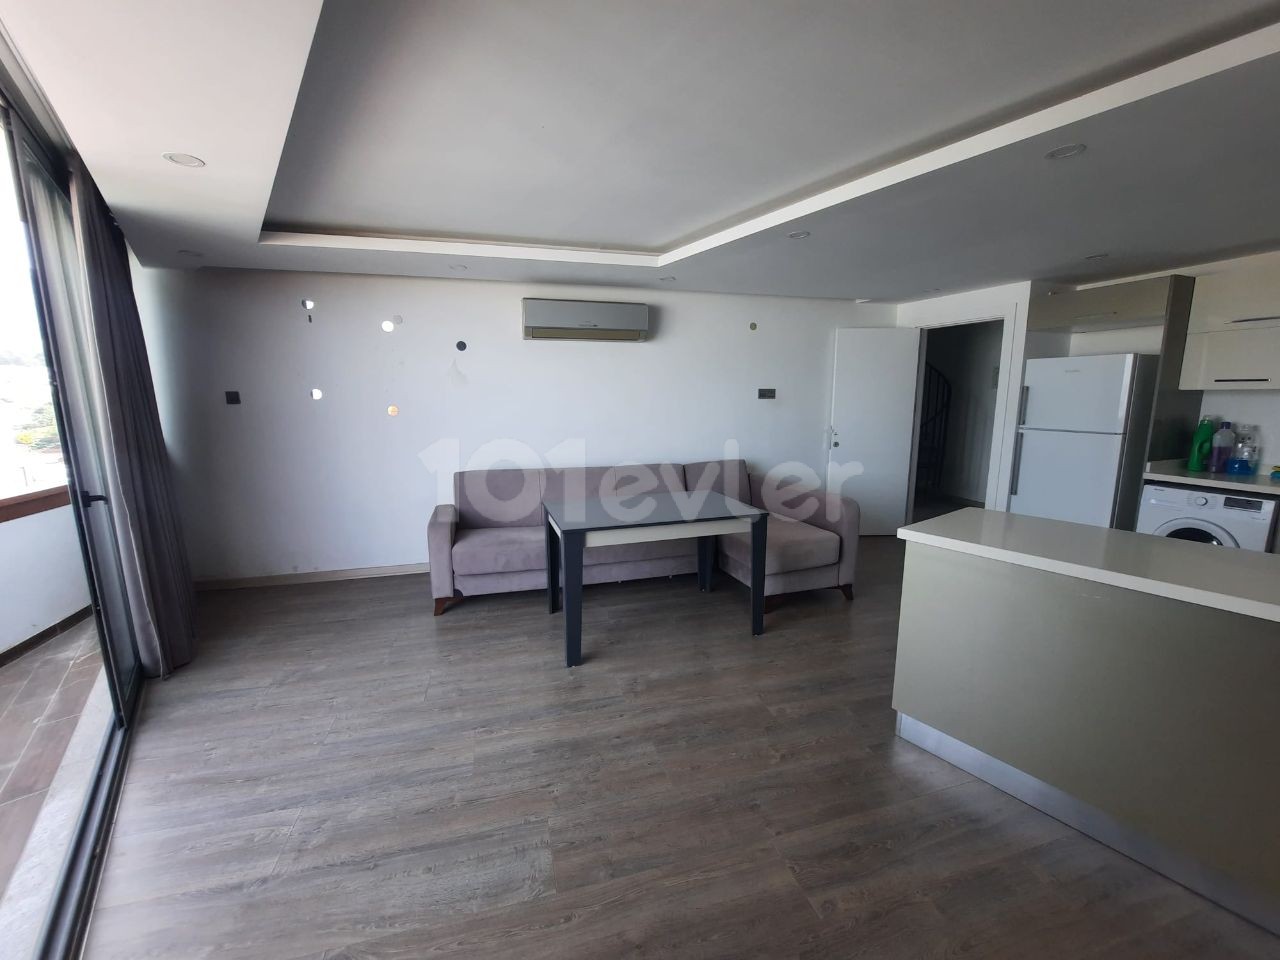 3+1 дуплексная квартира на продажу в Кирении Акакан Элеганс с панорамным видом